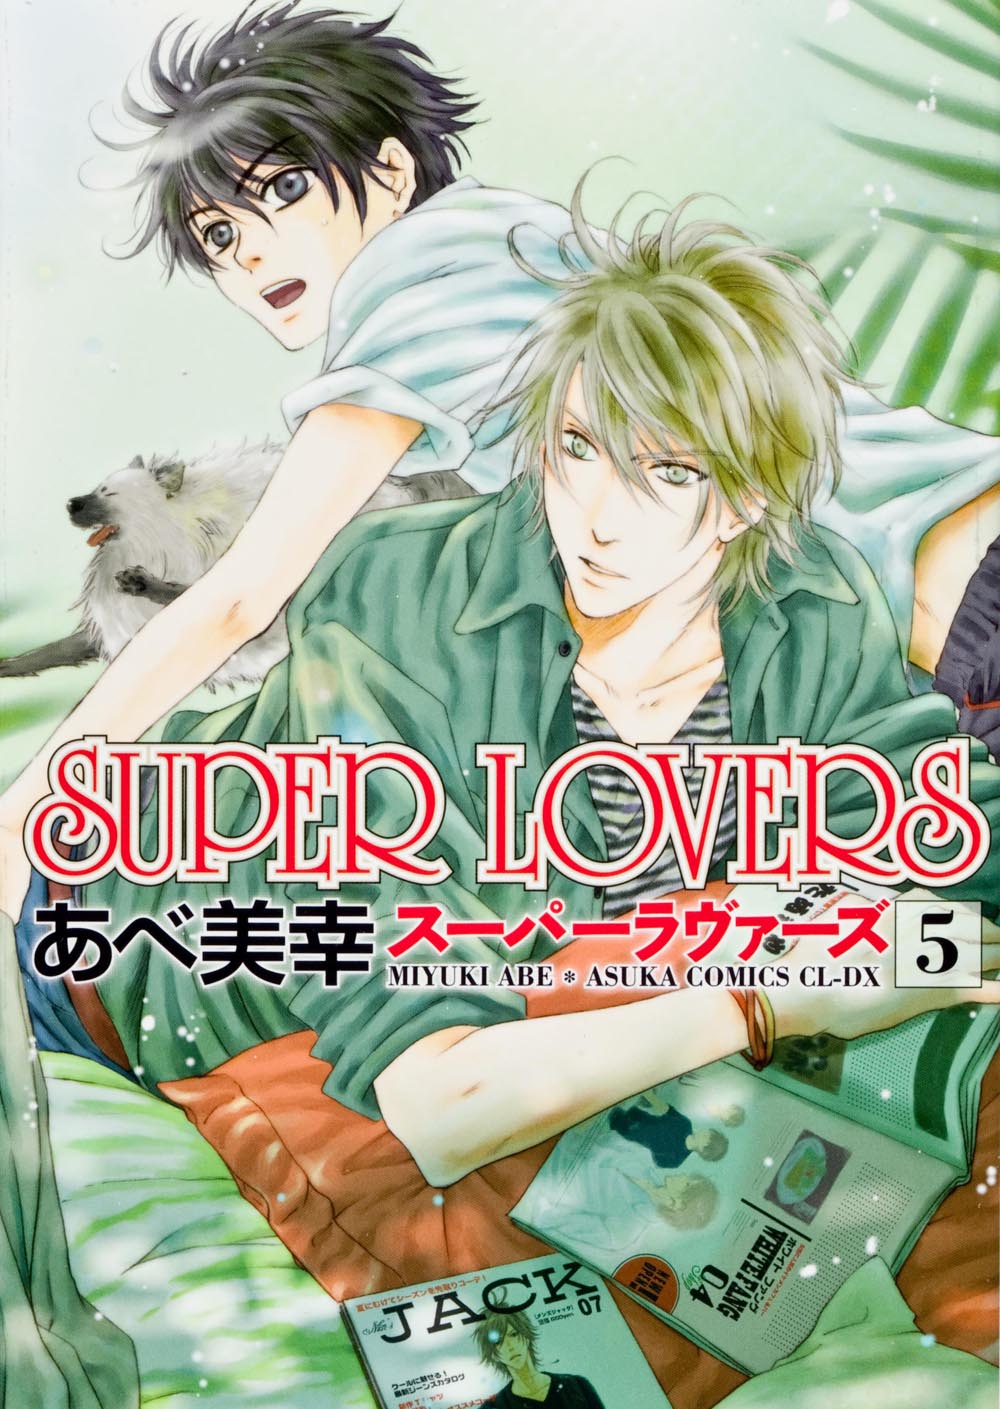 Super Lovers 5の商品画像